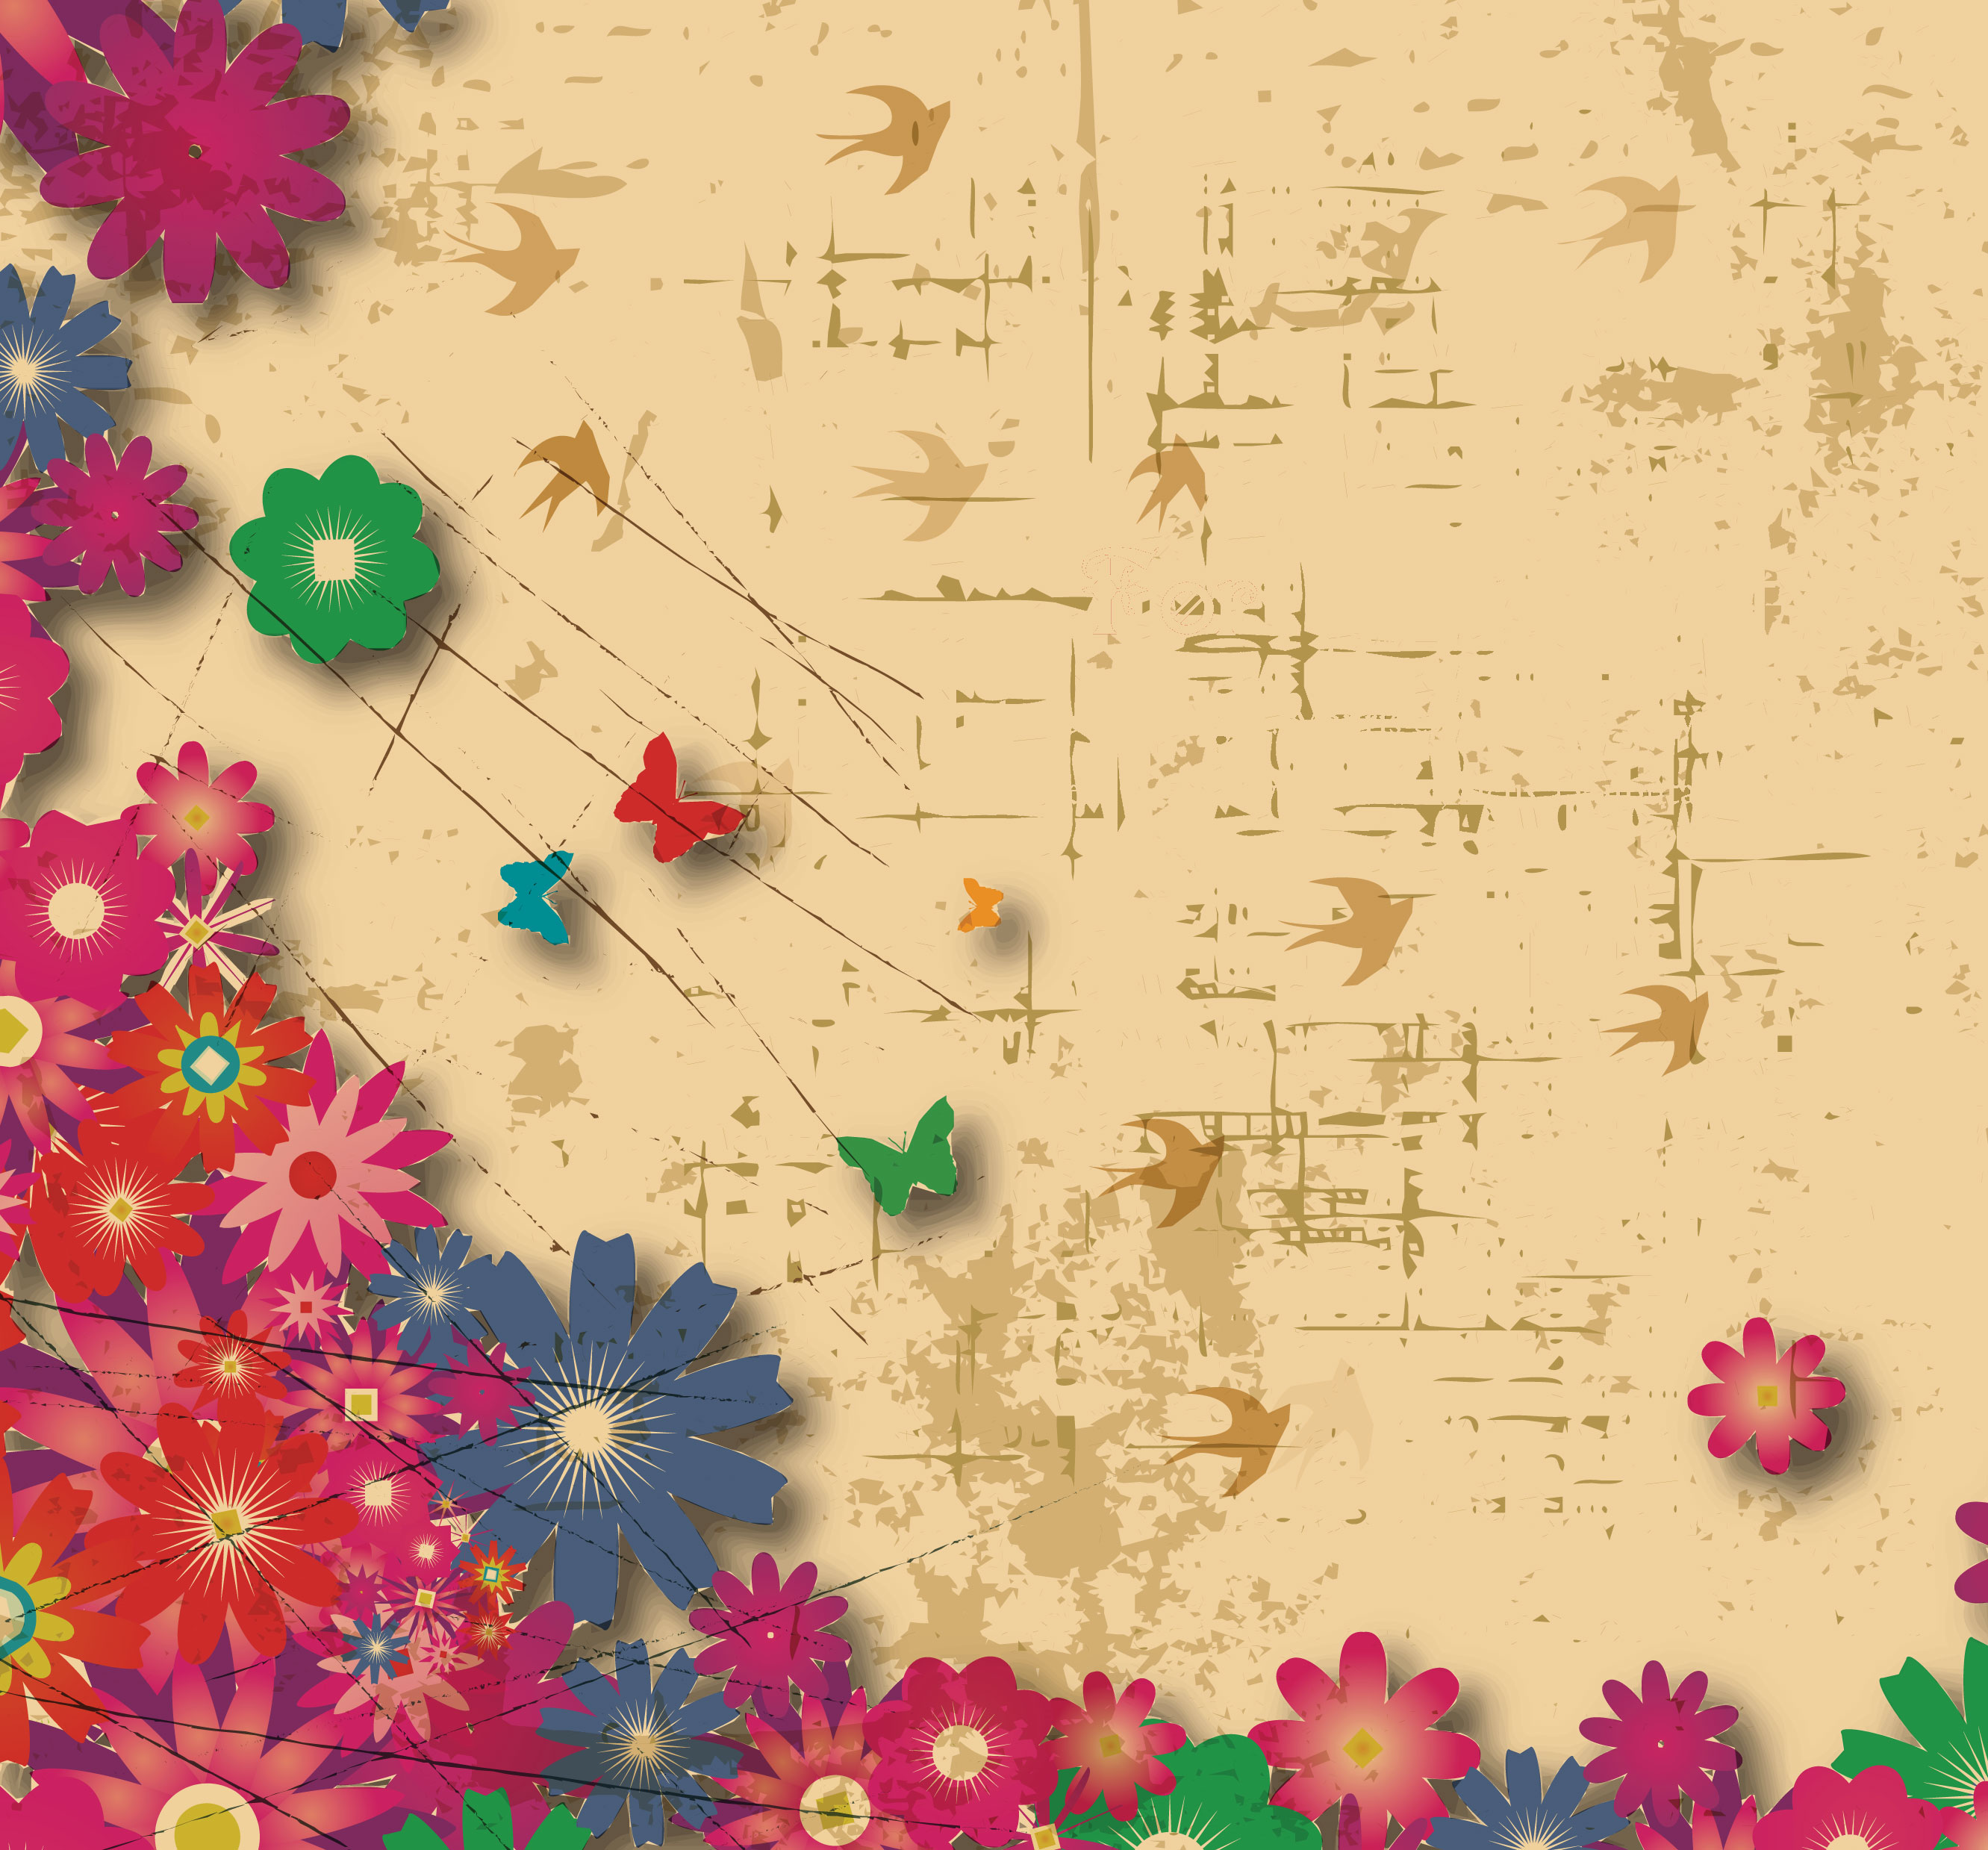 花のイラスト フリー素材 壁紙 背景no 576 赤青緑 レトロ模様 鳥